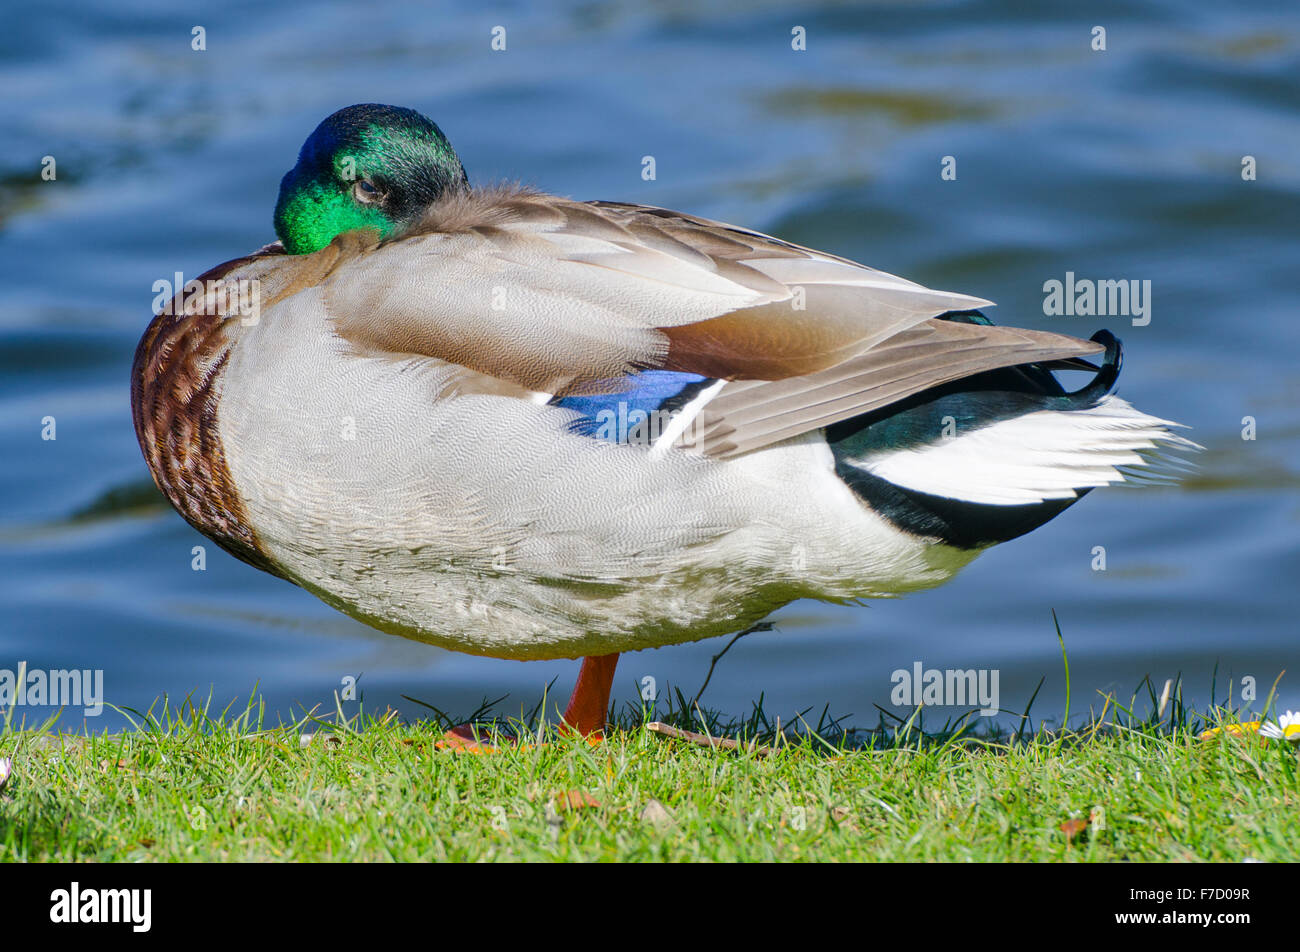 Drake Mallard duck (Anas platyrhynchos) in piedi sull'erba dall'acqua nel Regno Unito. Foto Stock